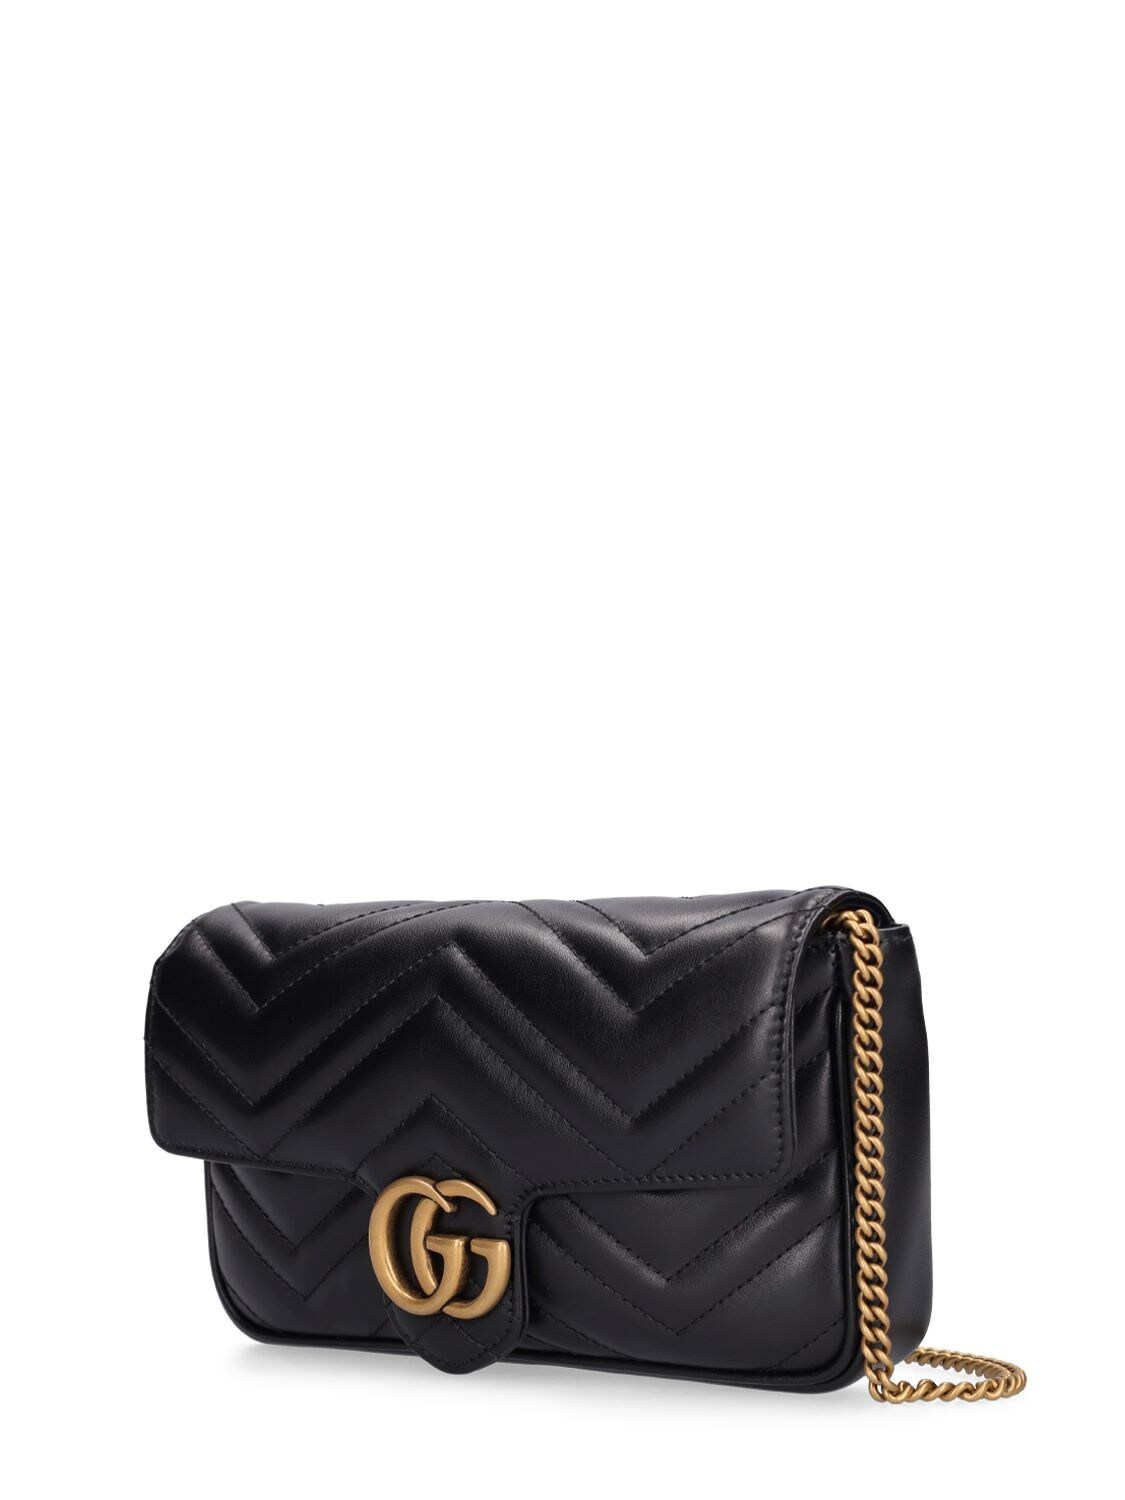 Gucci GG Marmont Leather Shoulder Bag Black